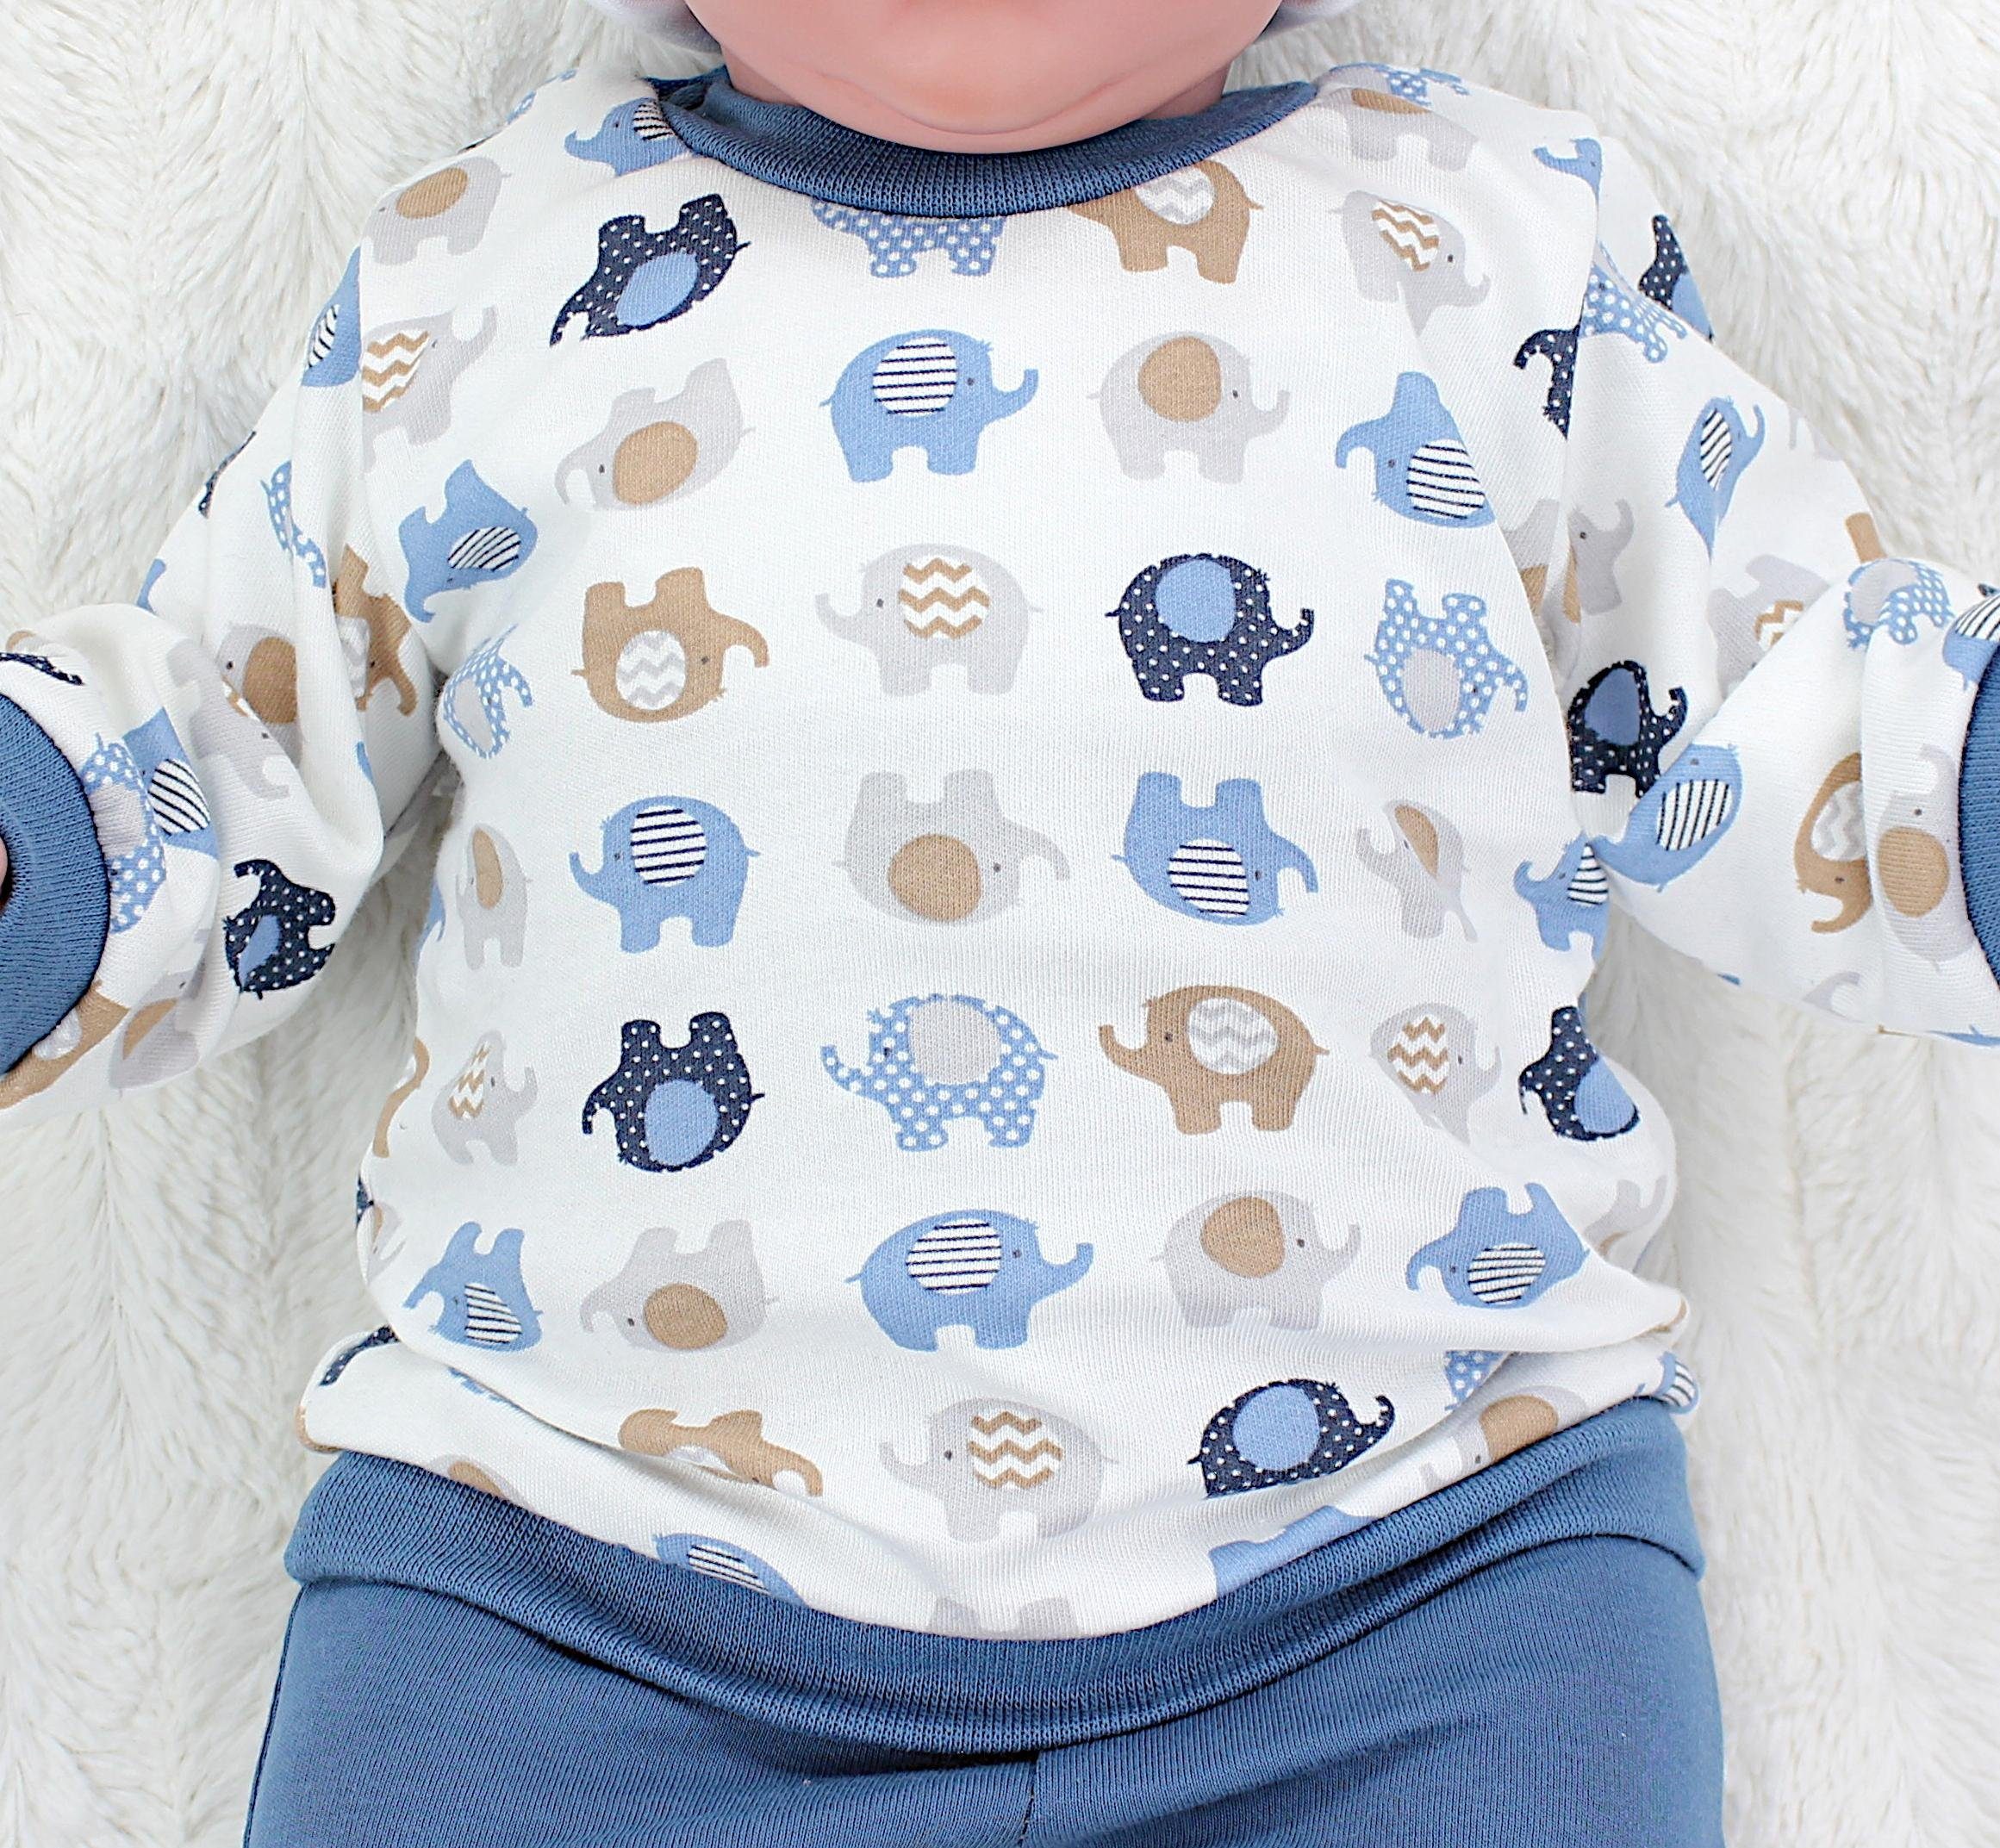 Babyhose Spruch Langarmshirt Erstausstattungspaket Baby Babykleidung Jungen Print Jeansblau TupTam Outfit Elefanten mit